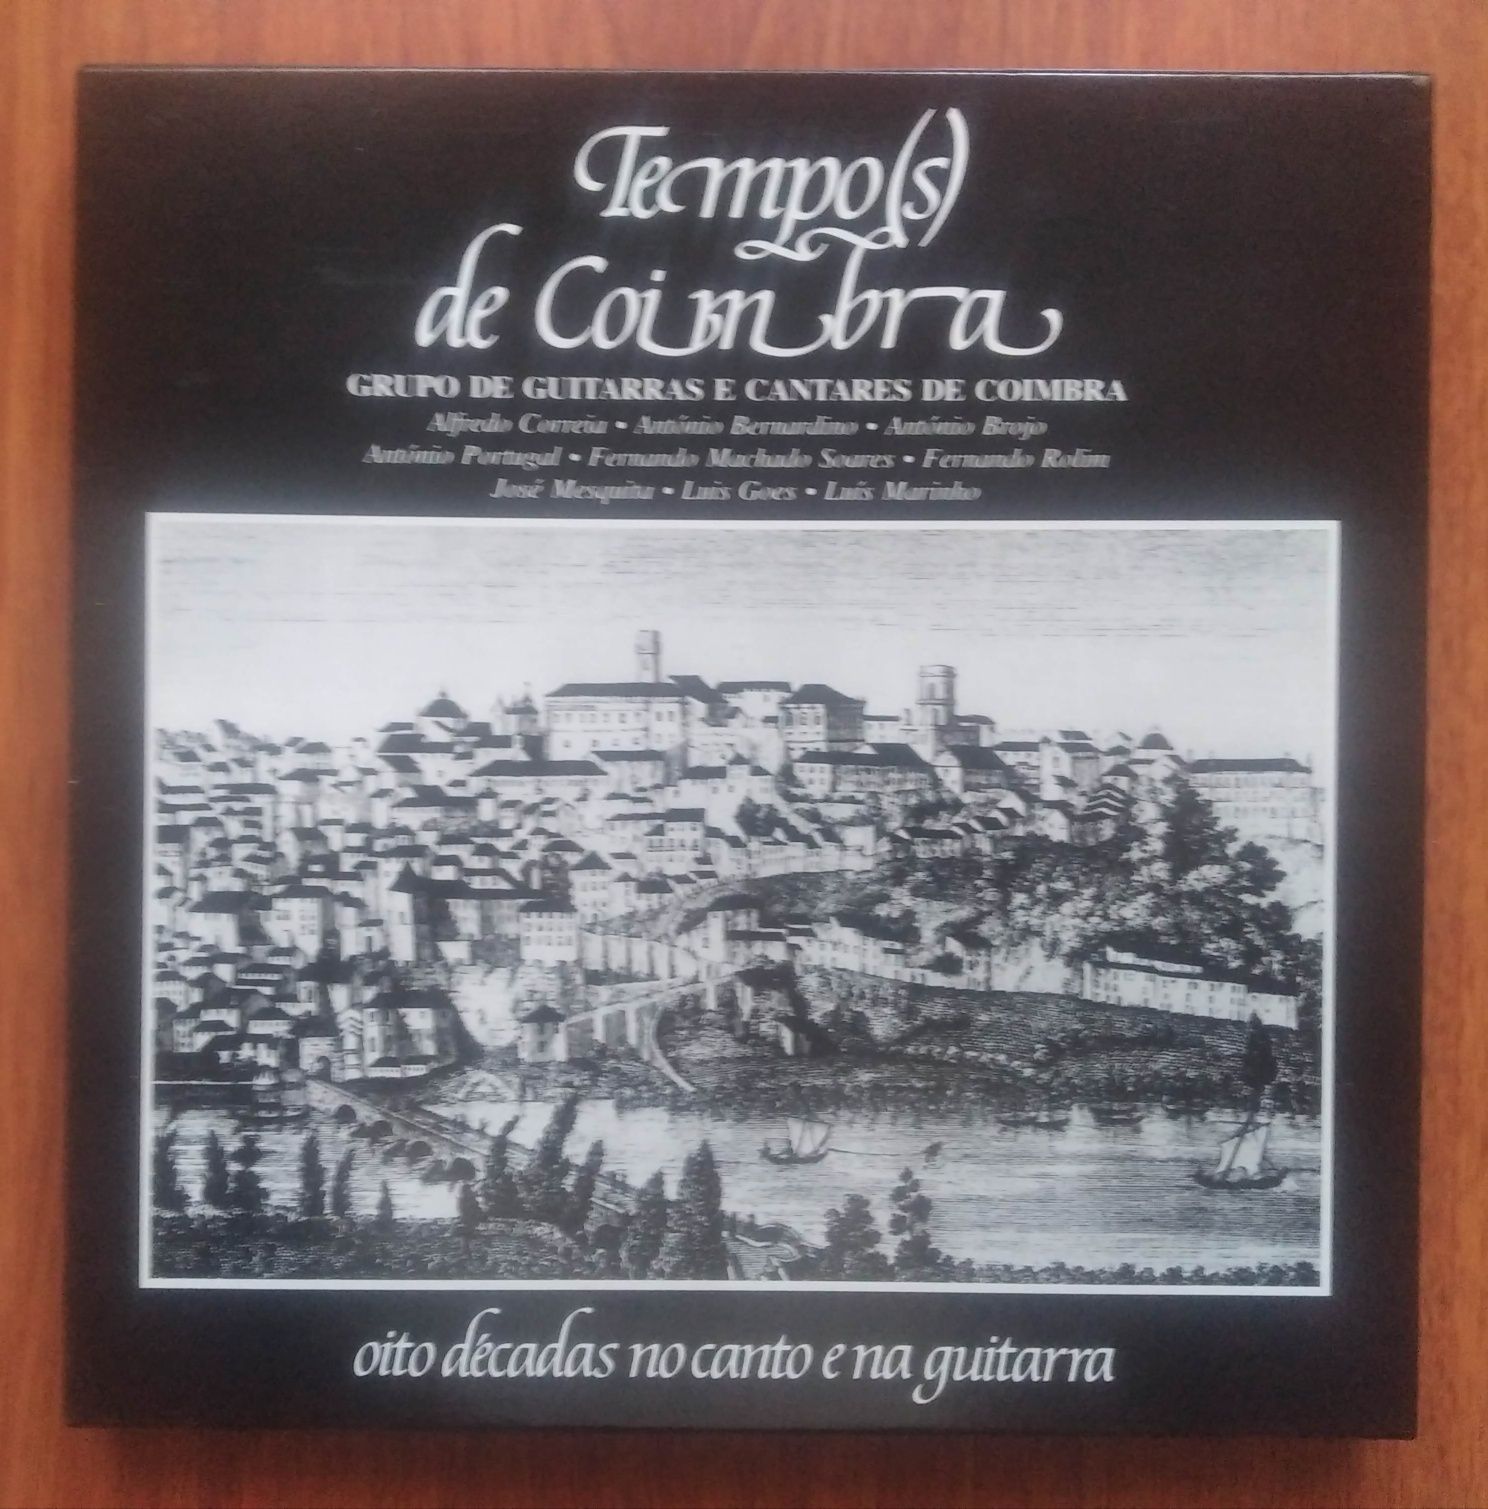 Caixa com 6 discos vinil "Tempos de Coimbra"